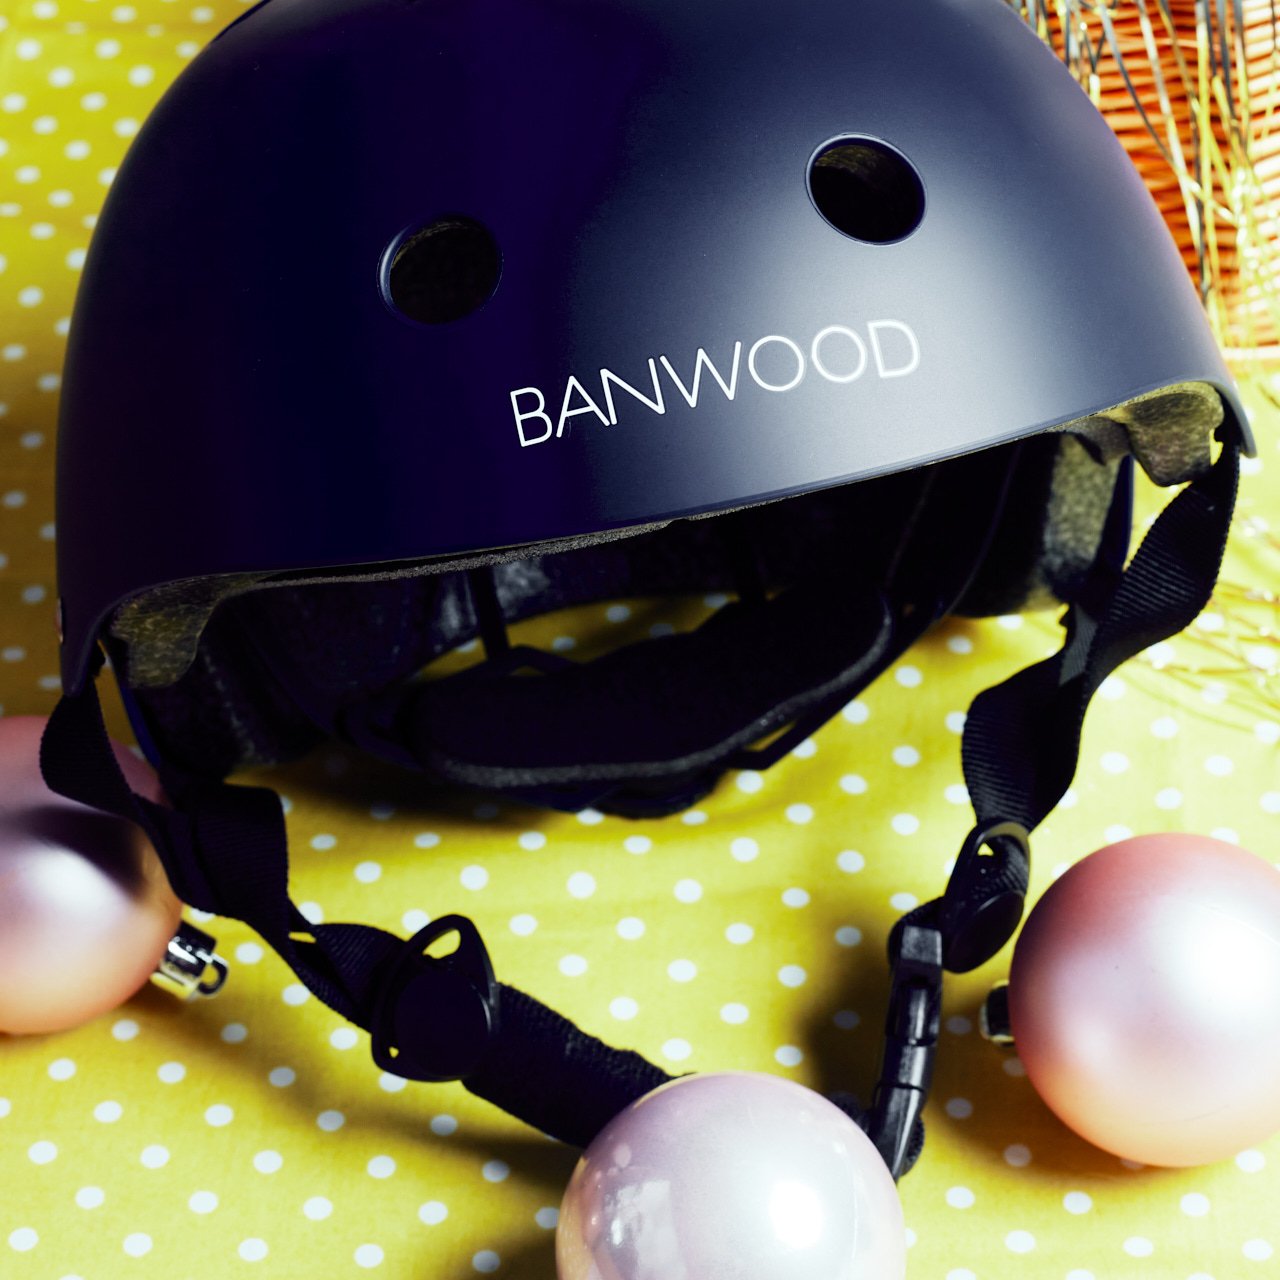  BANWOOD  Classic Helmet  £39 